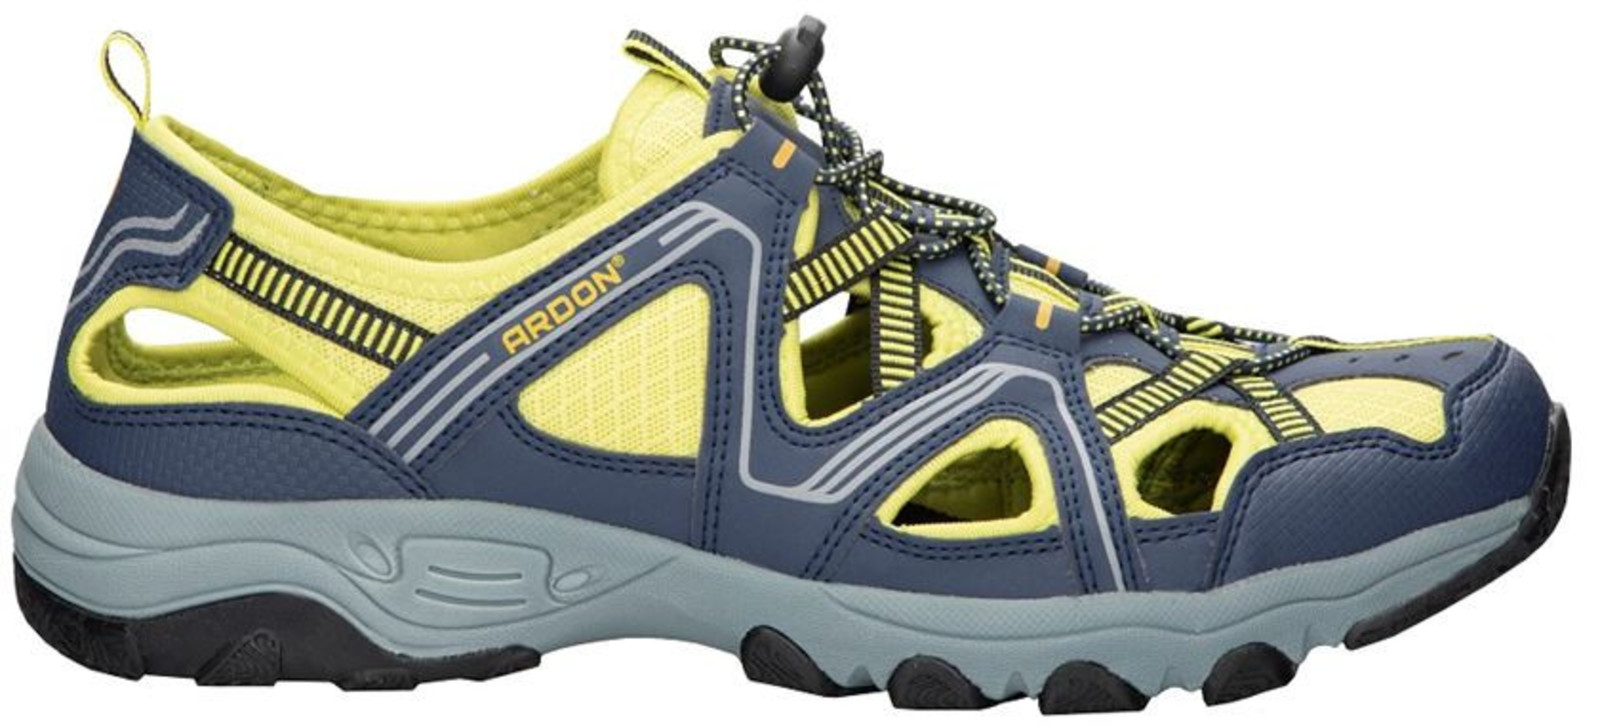 Trekové sandále Ardon Strand - veľkosť: 40, farba: modrá/žltá